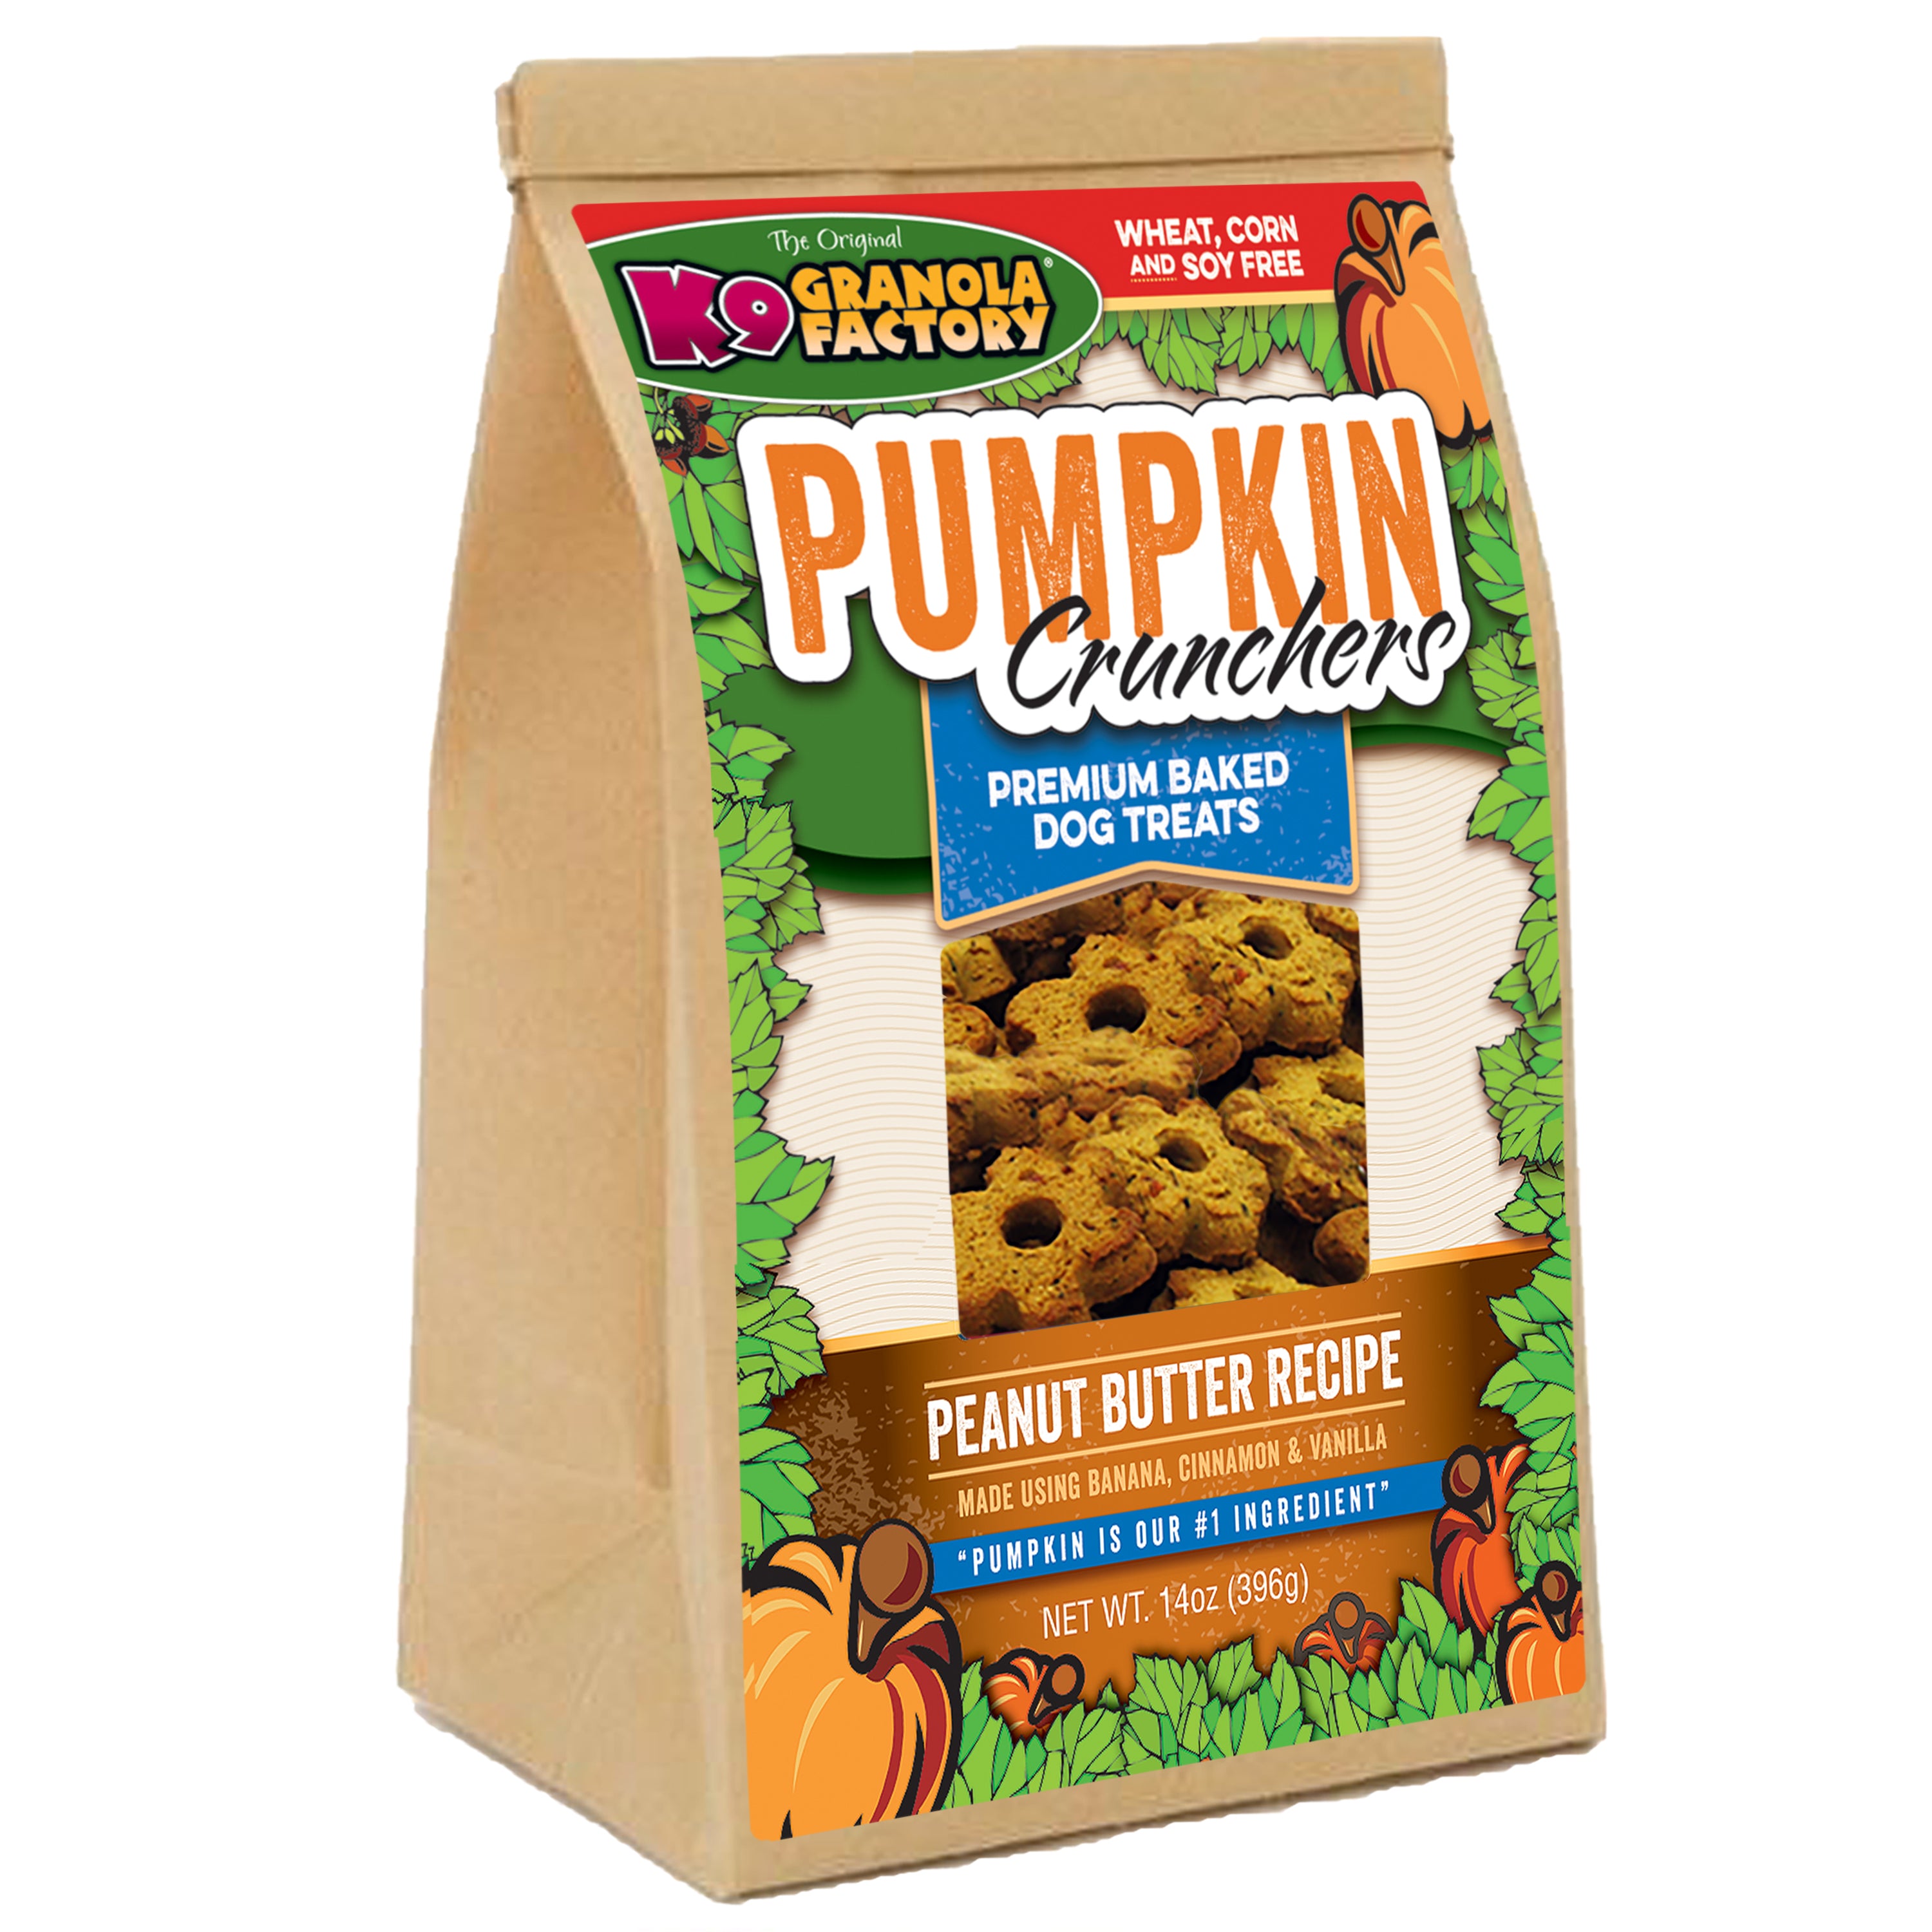 K9 Granola Factory Pumpkin Crunchers Dog Treats, Peanut Butter